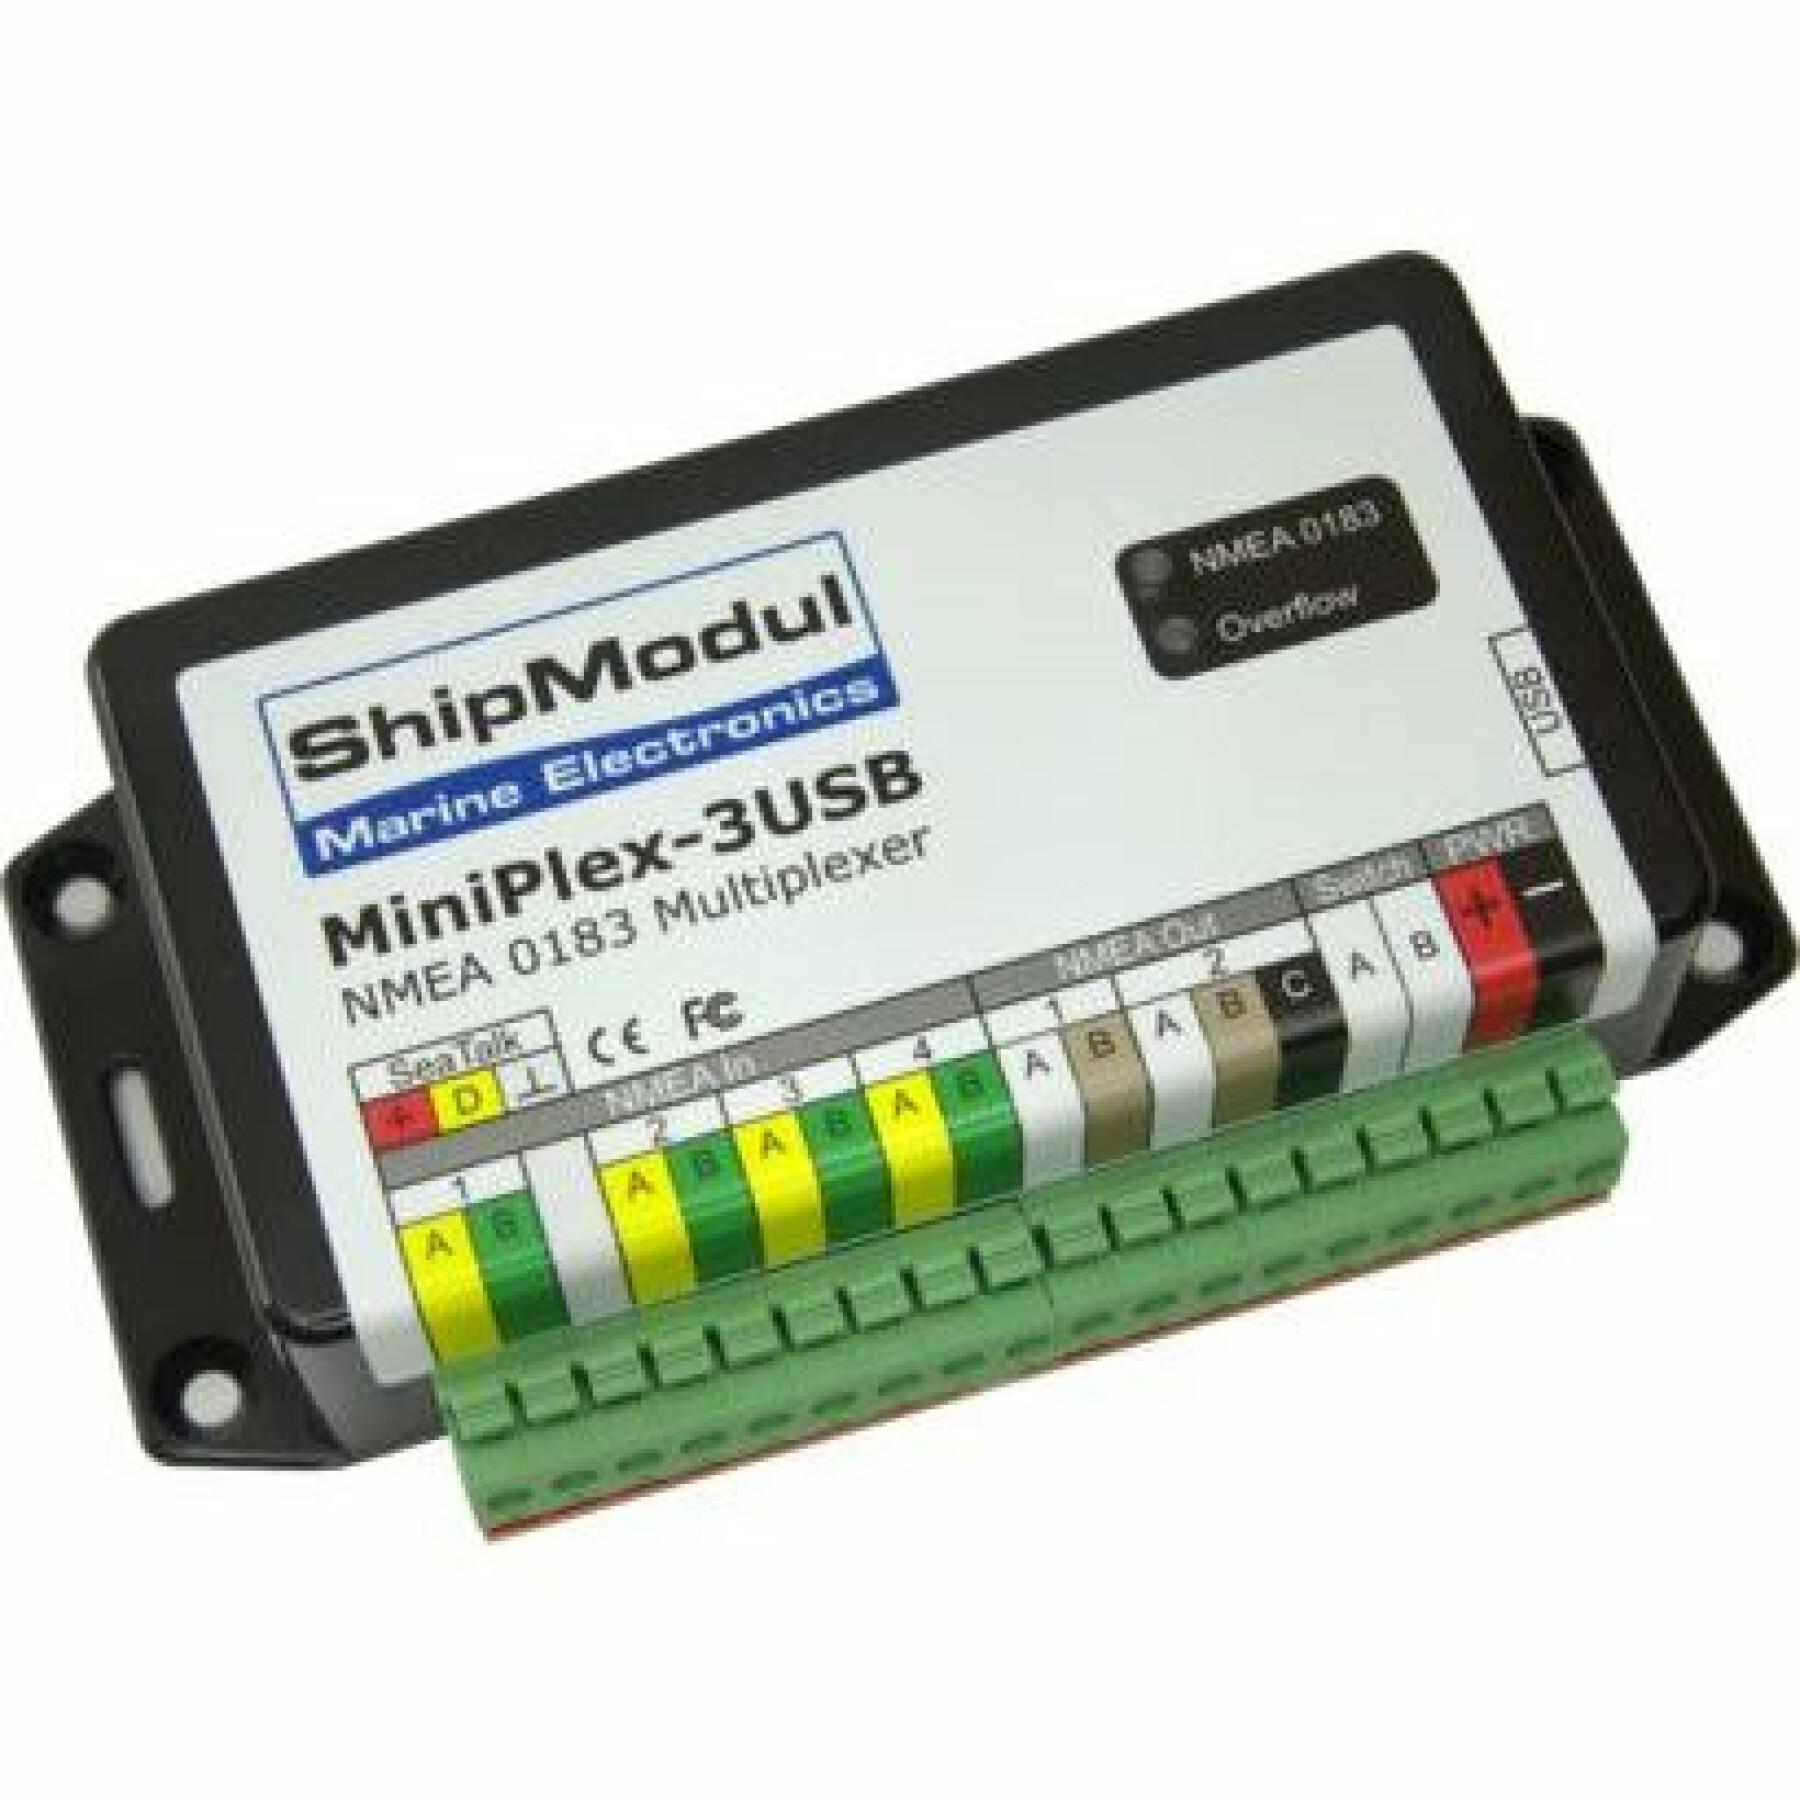 Multiplekser usb wersja ShipModul Miniplex-3USB